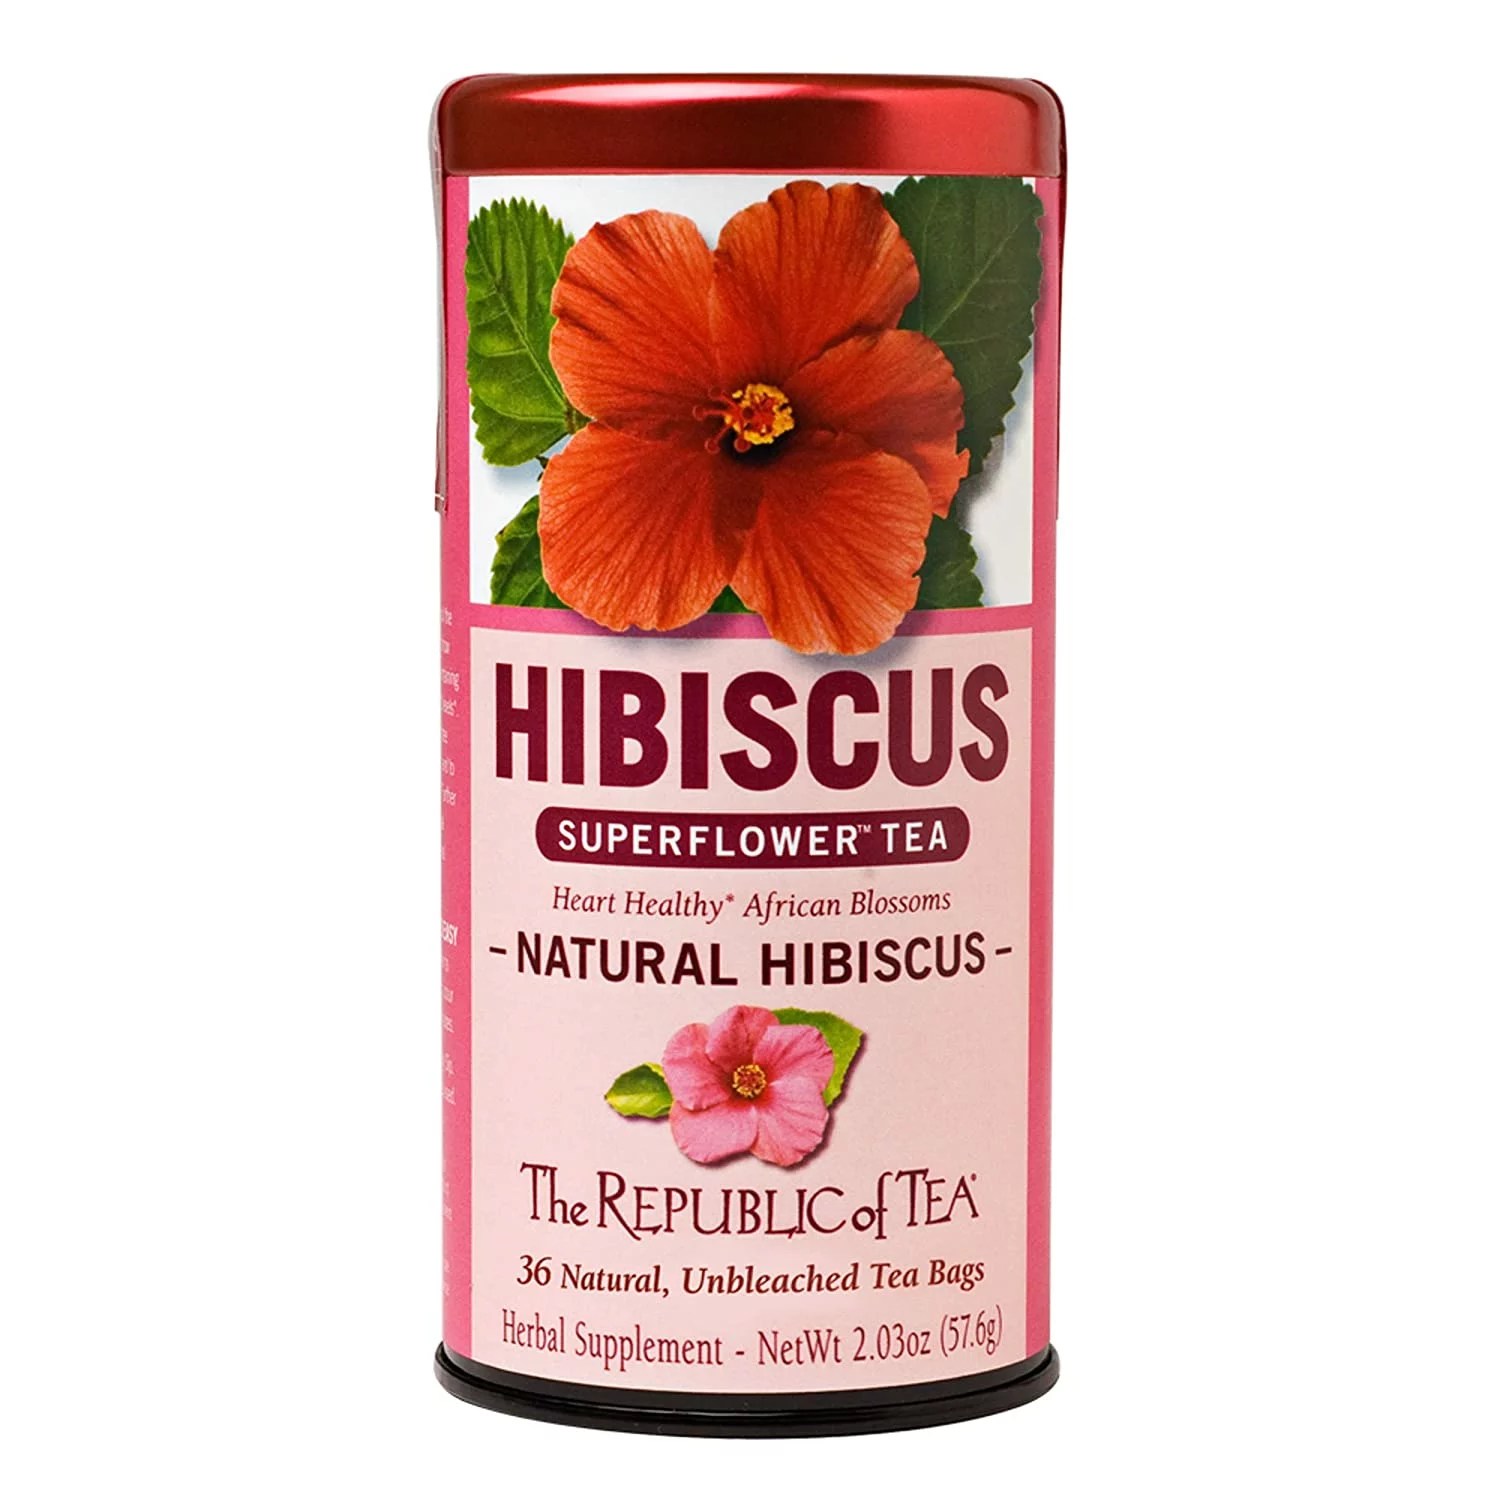 Does hibiscus tea make you sleepy the republic of tea